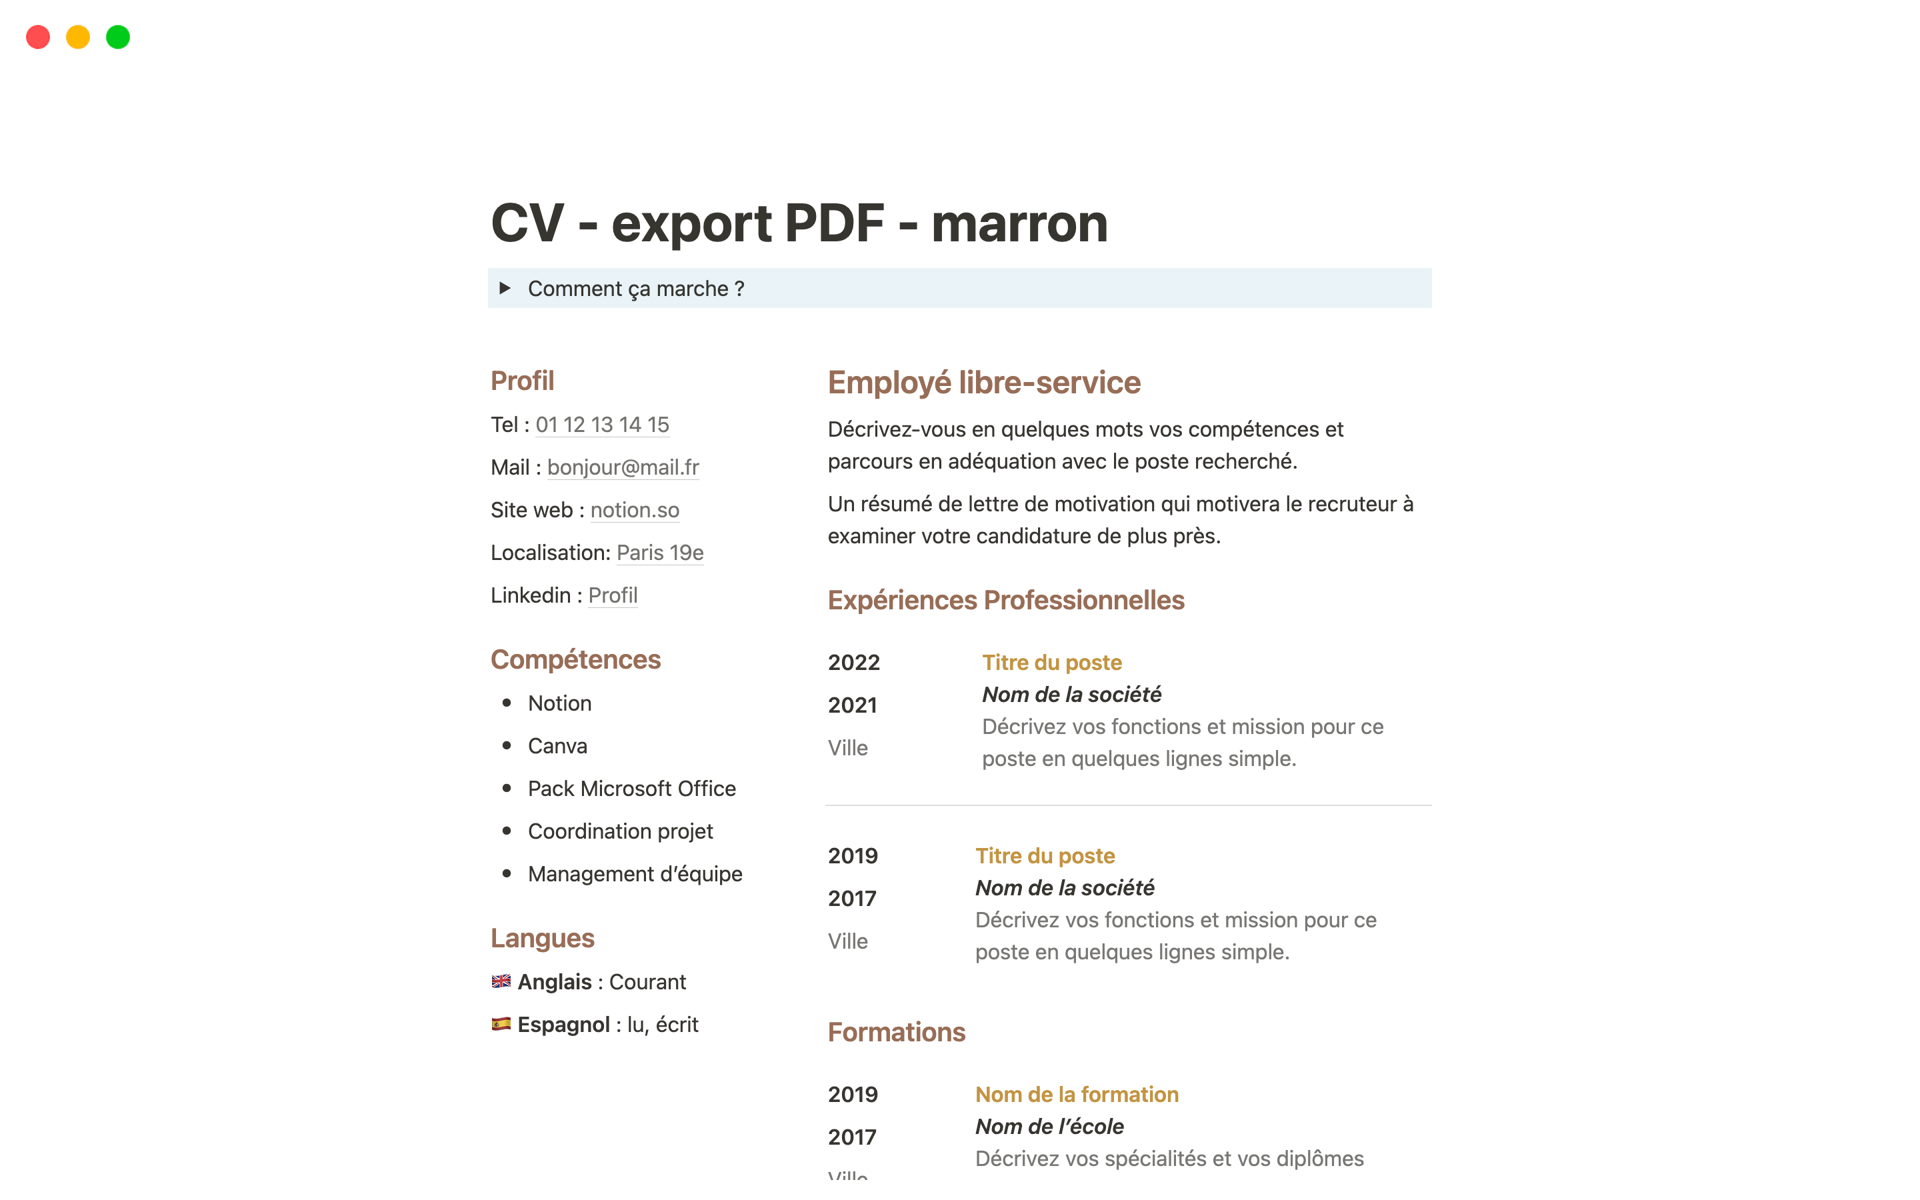 Uma prévia do modelo para CV simple pour export PDF - marron